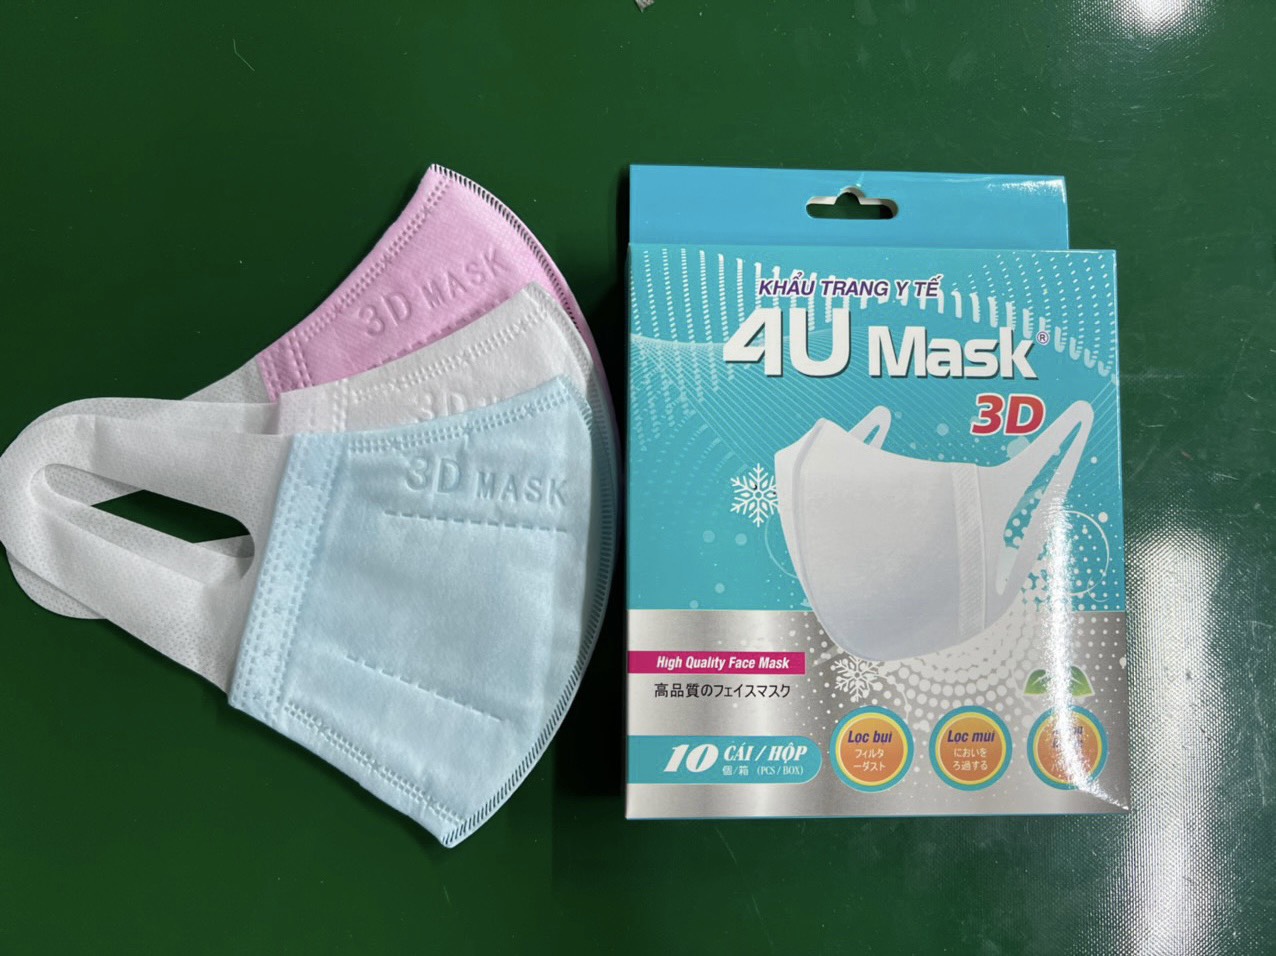 Khẩu trang 4U Mask 3D người lớn